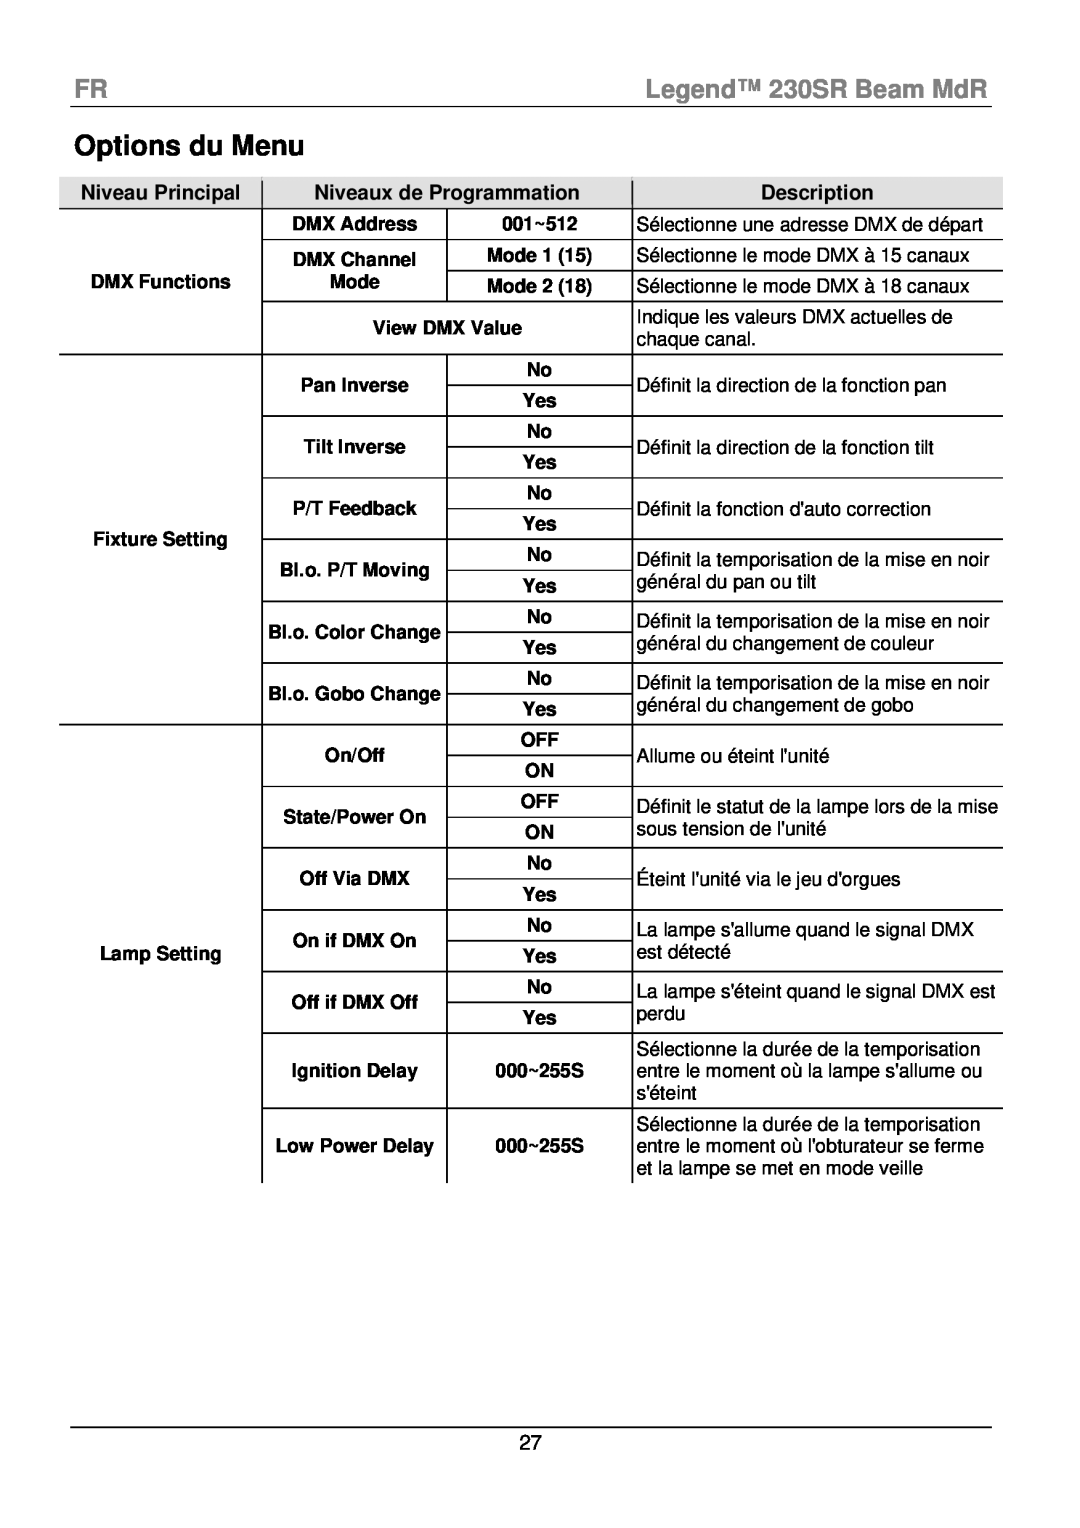 Chauvet manual Options du Menu, FRLegend 230SR Beam MdR, Description 